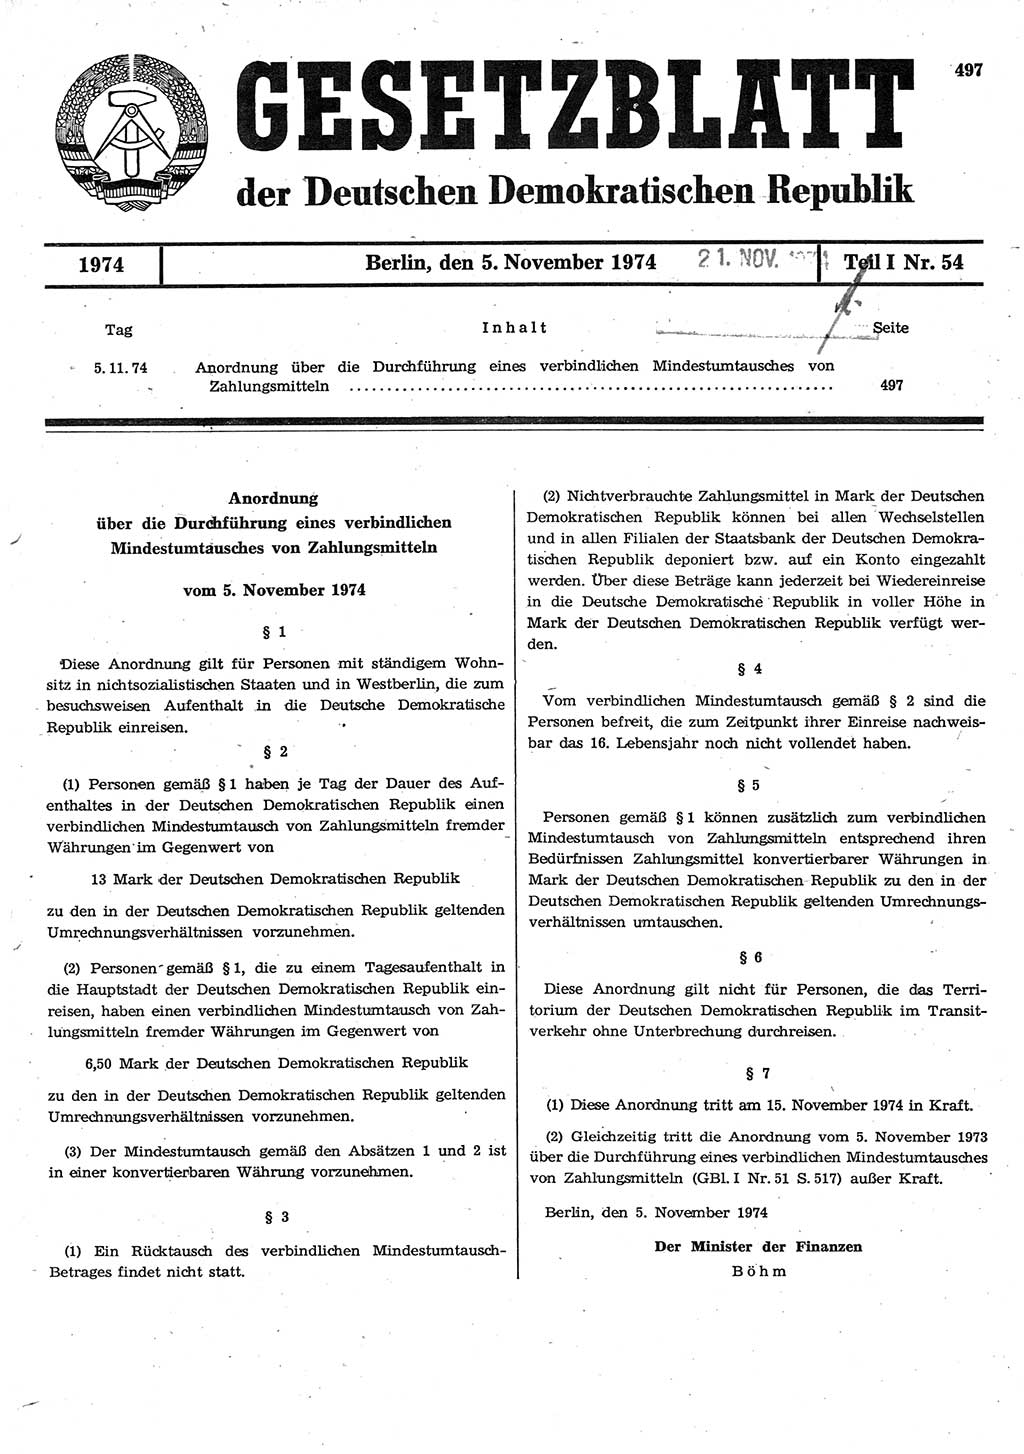 Gesetzblatt (GBl.) der Deutschen Demokratischen Republik (DDR) Teil Ⅰ 1974, Seite 497 (GBl. DDR Ⅰ 1974, S. 497)